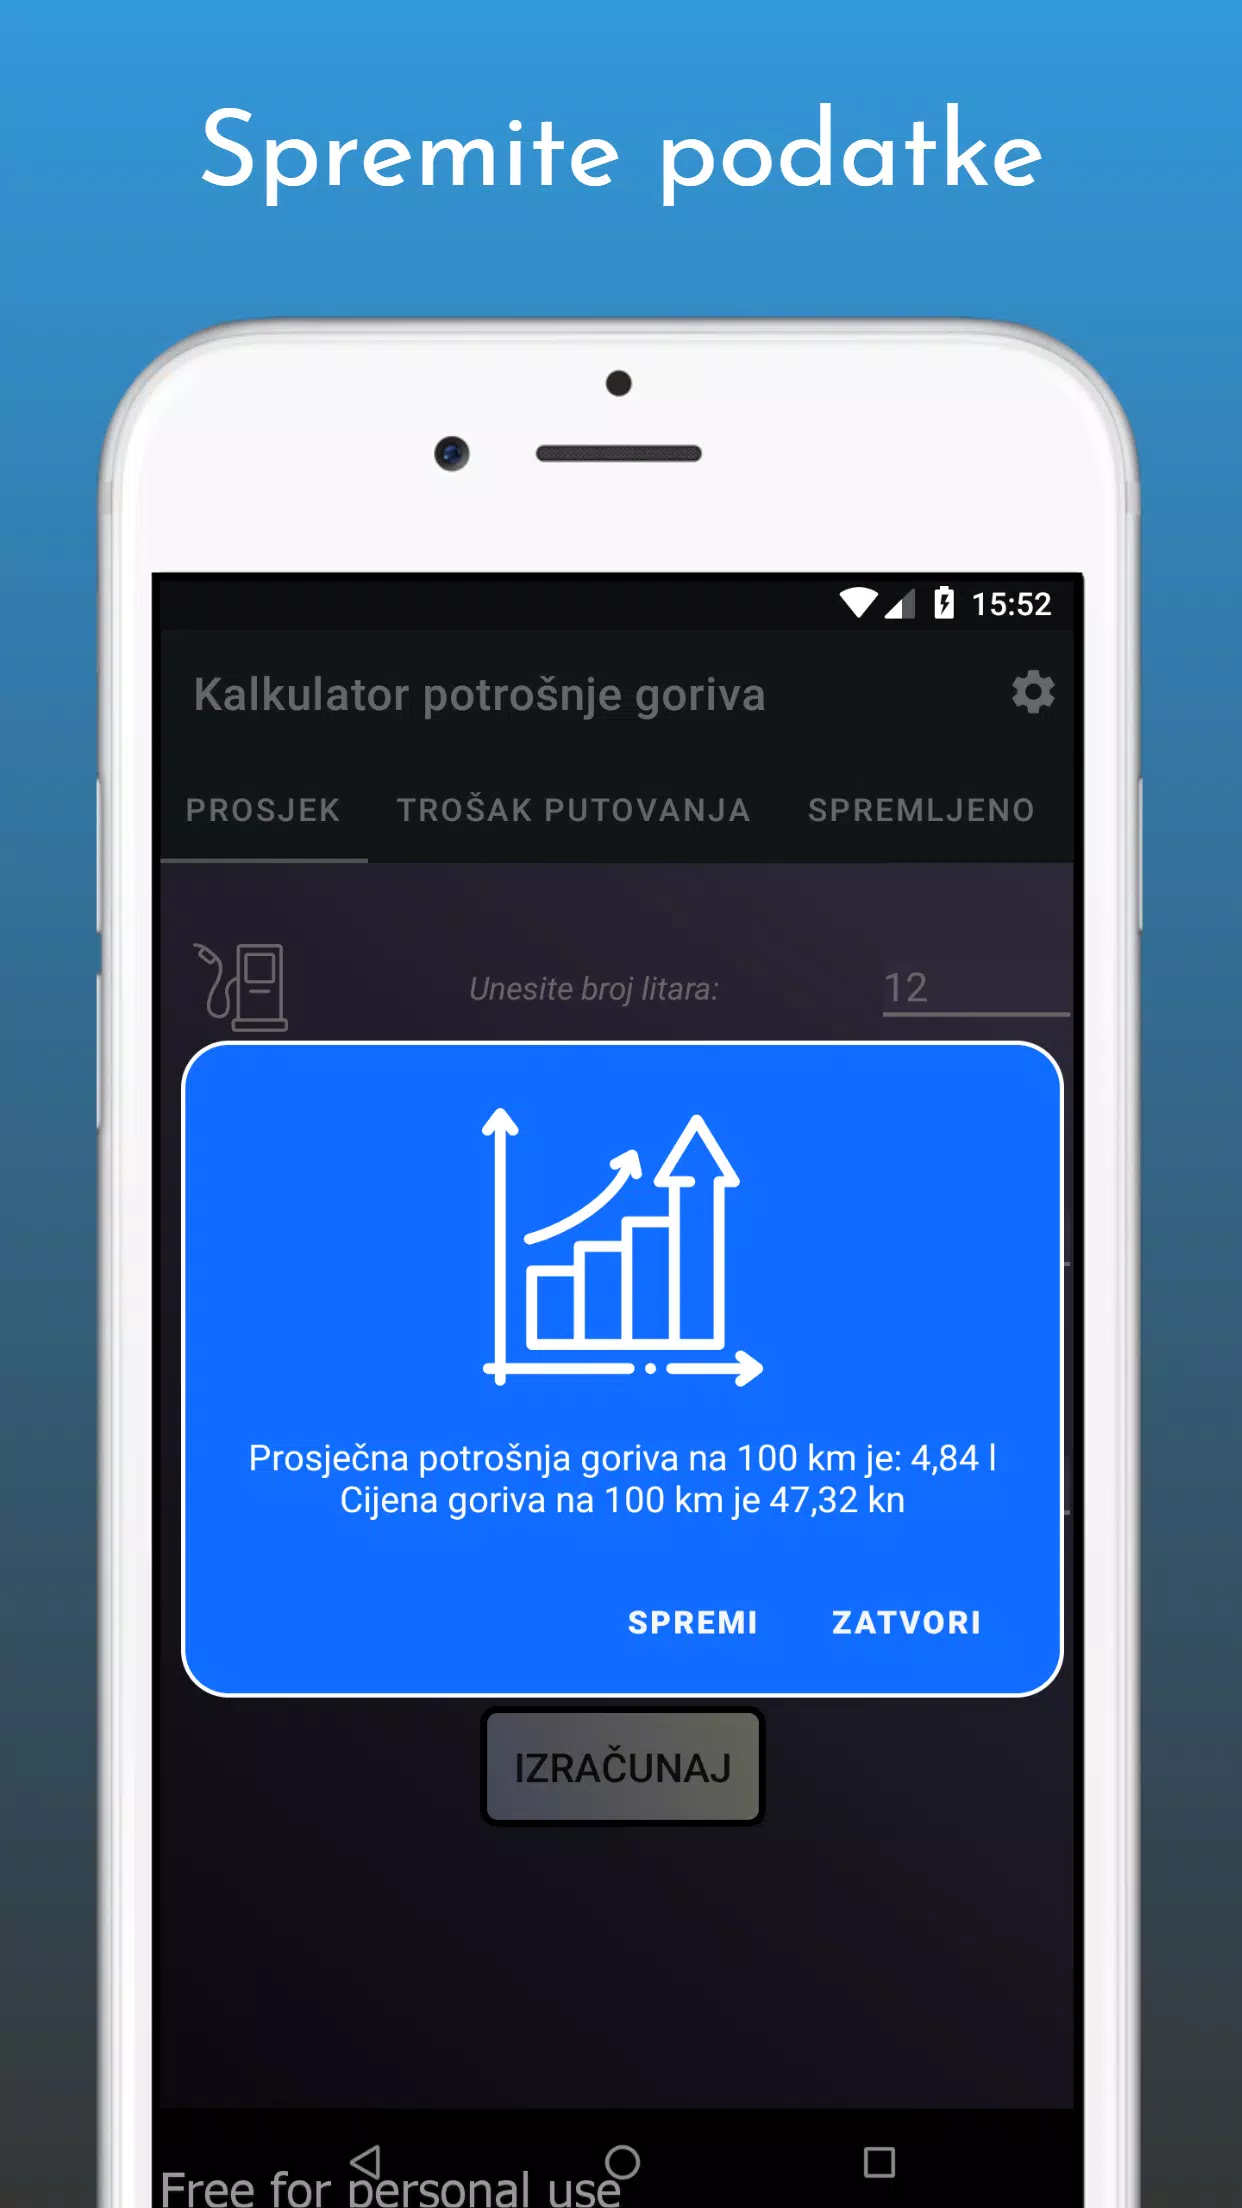 Kalkulator potrošnje goriva for Android - APK Download